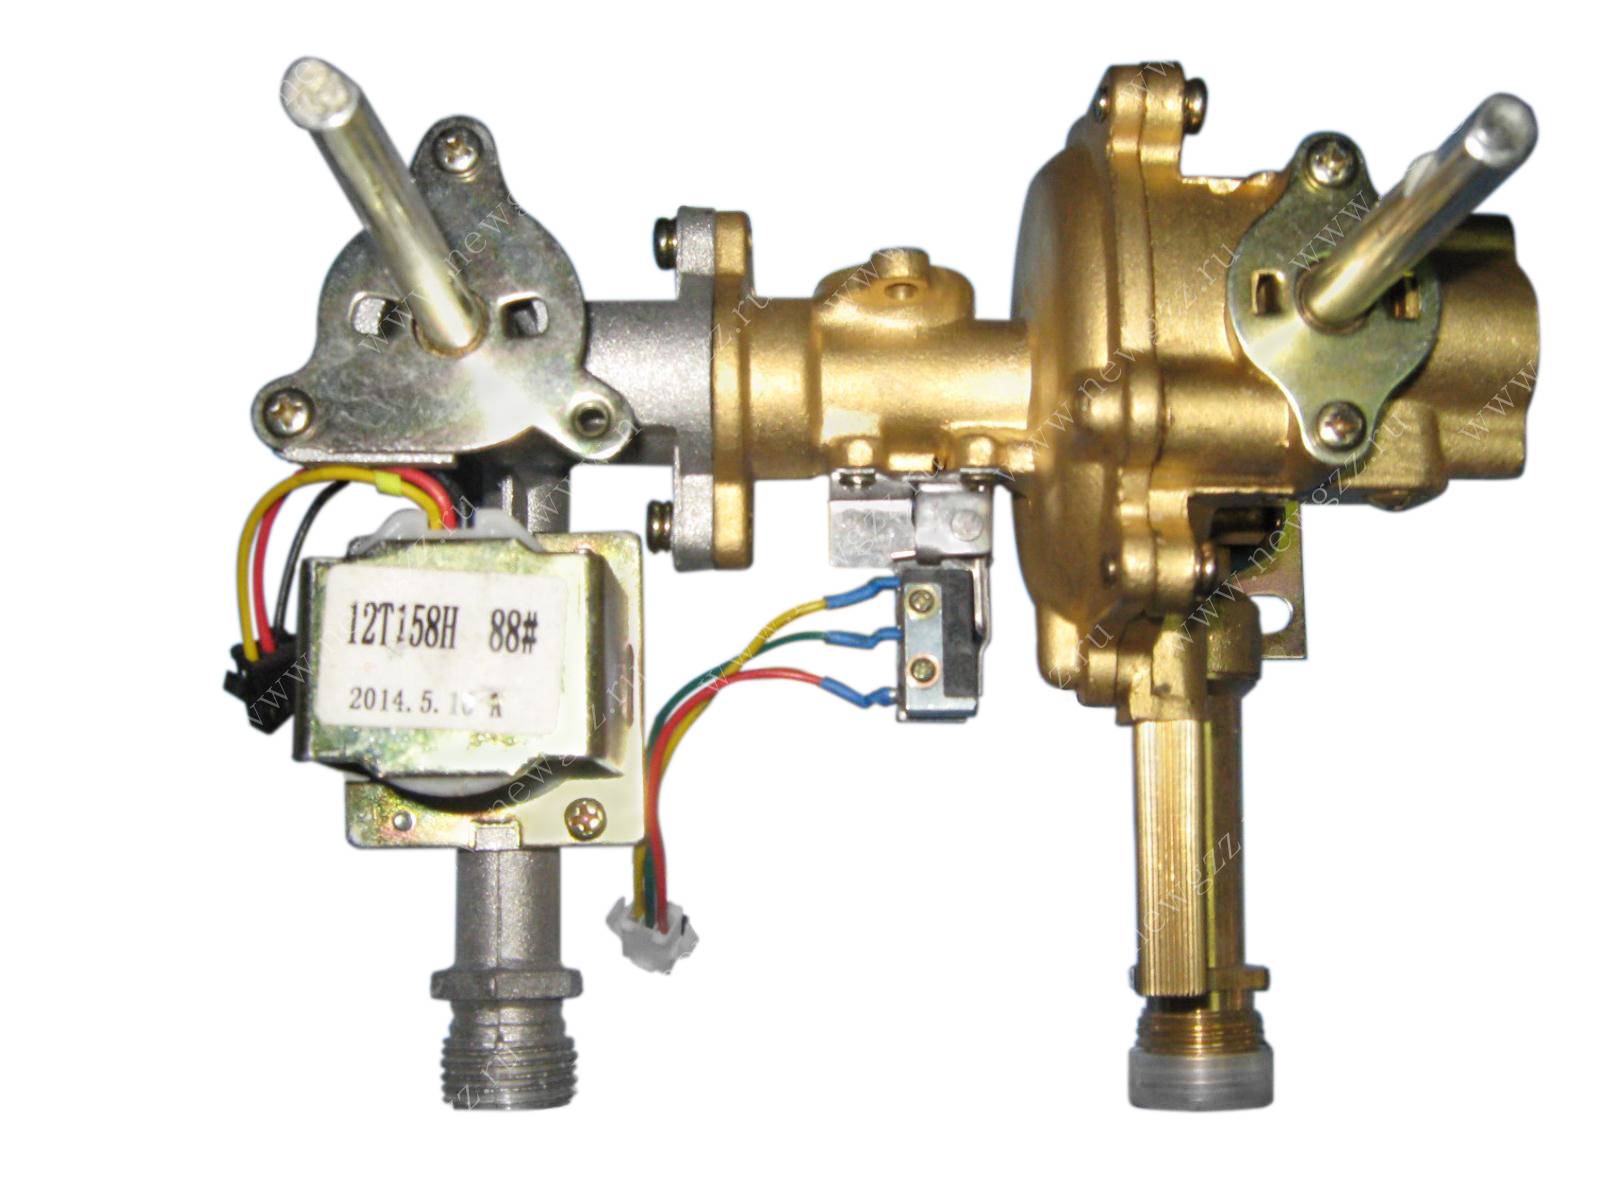 Принцип работы газовой колонки: особенности устройства и работы газового водонагревателя